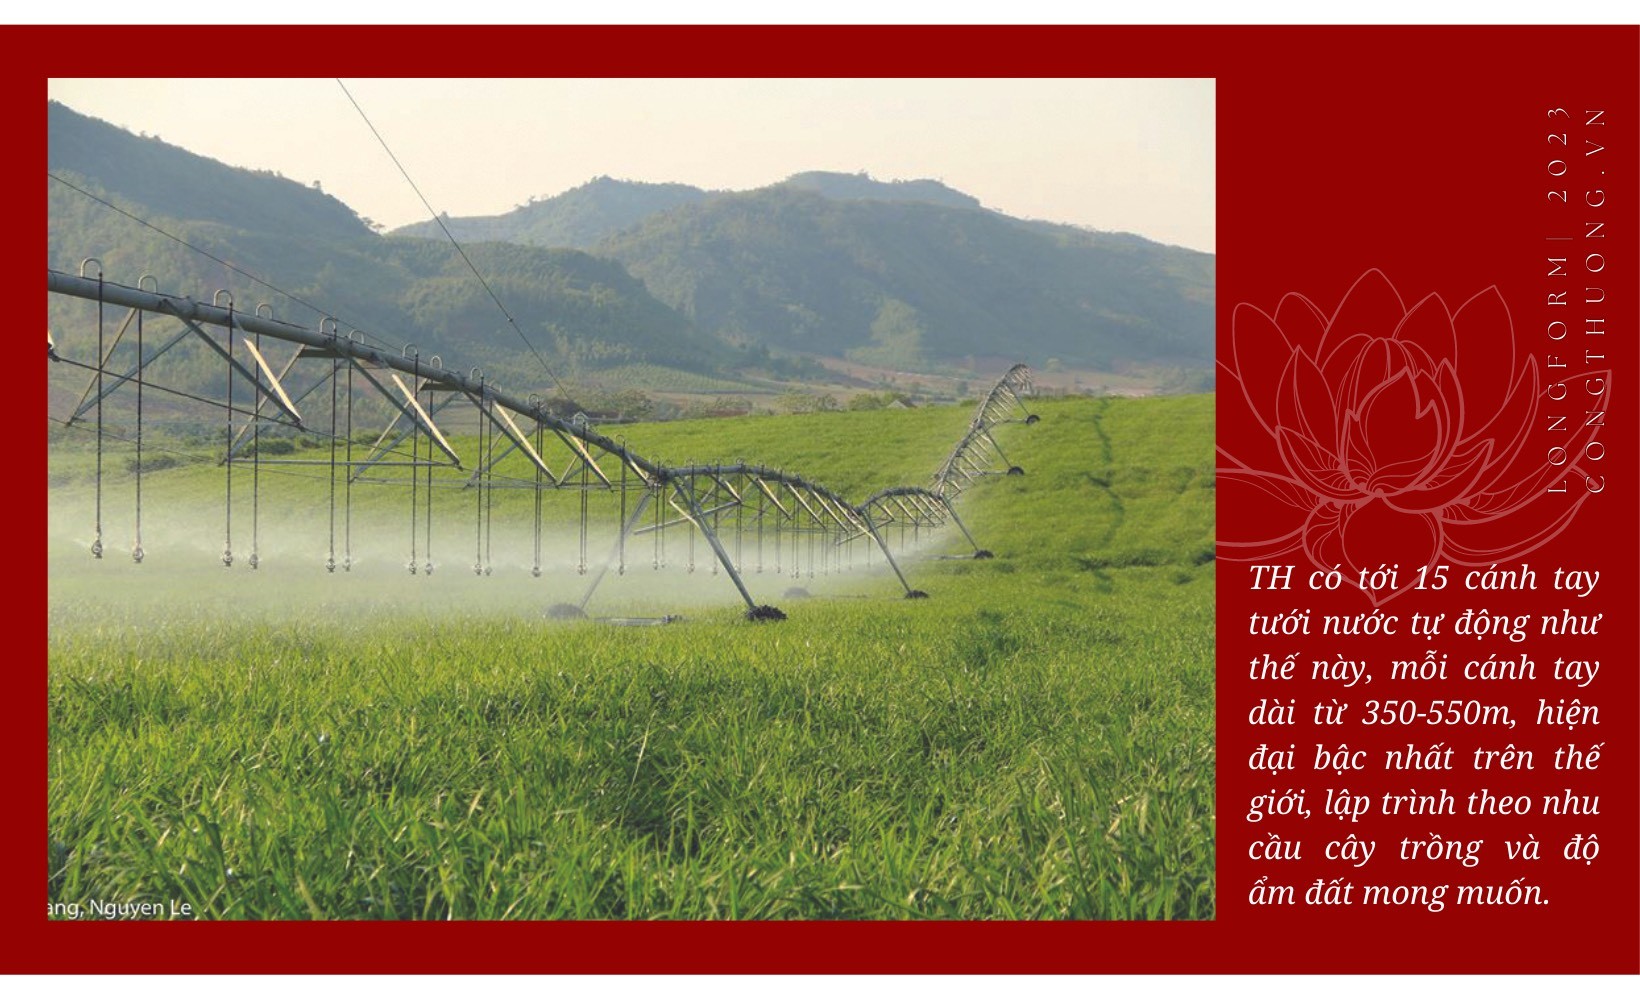 Longform | Từ nông trường 19/5 ven đường mòn Hồ Chí Minh đến kỳ tích mô hình Nông nghiệp Công nghệ cao